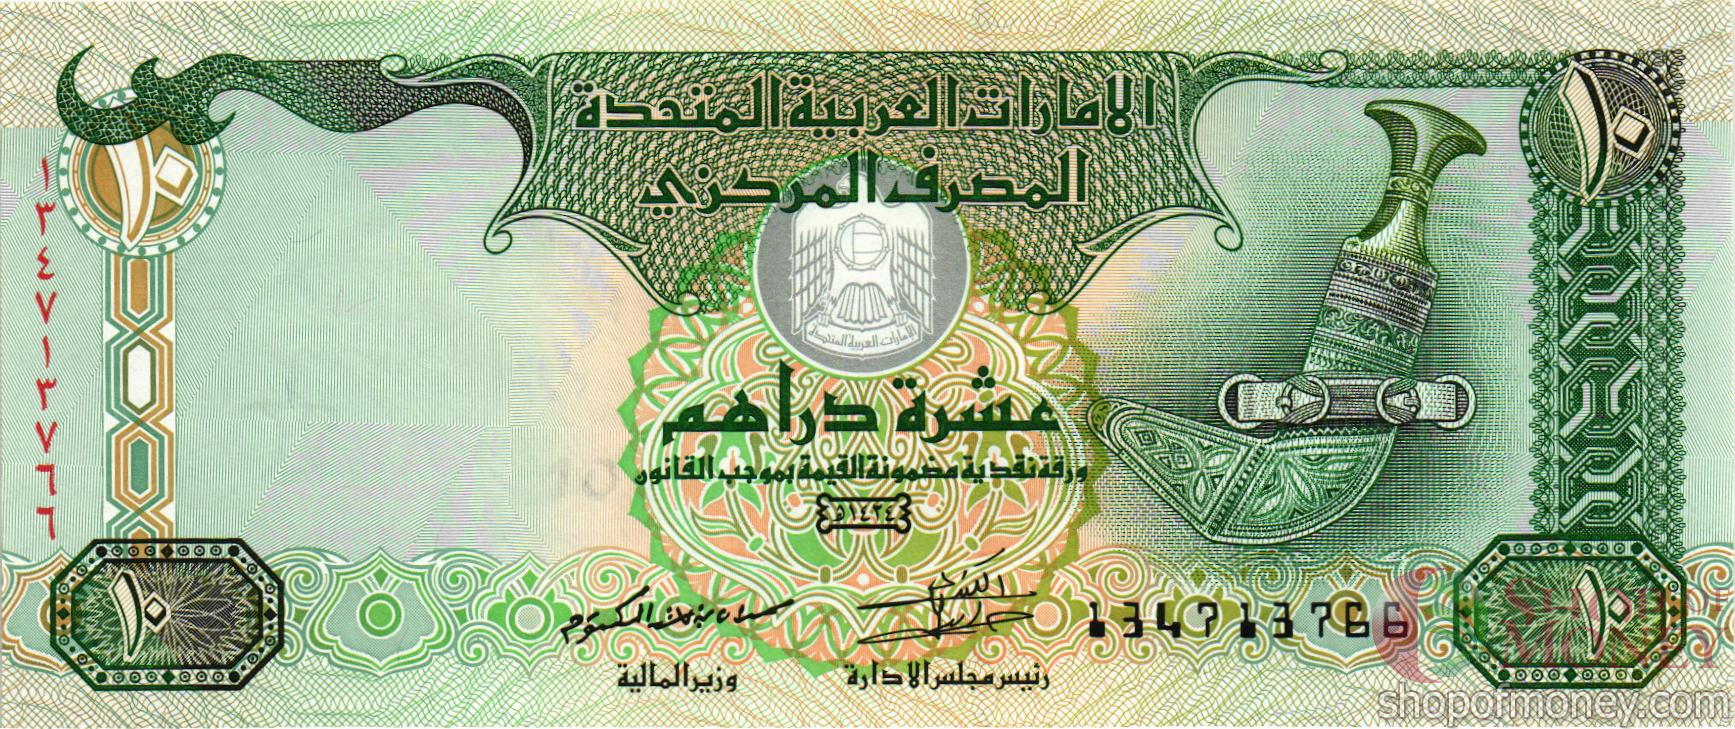 10 Дирхам ОАЭ. Бумажные банкноты ОАЭ. Объединённые арабские эмираты 10 дирхам. Купюры дирхамы ОАЭ. 9000 дирхам